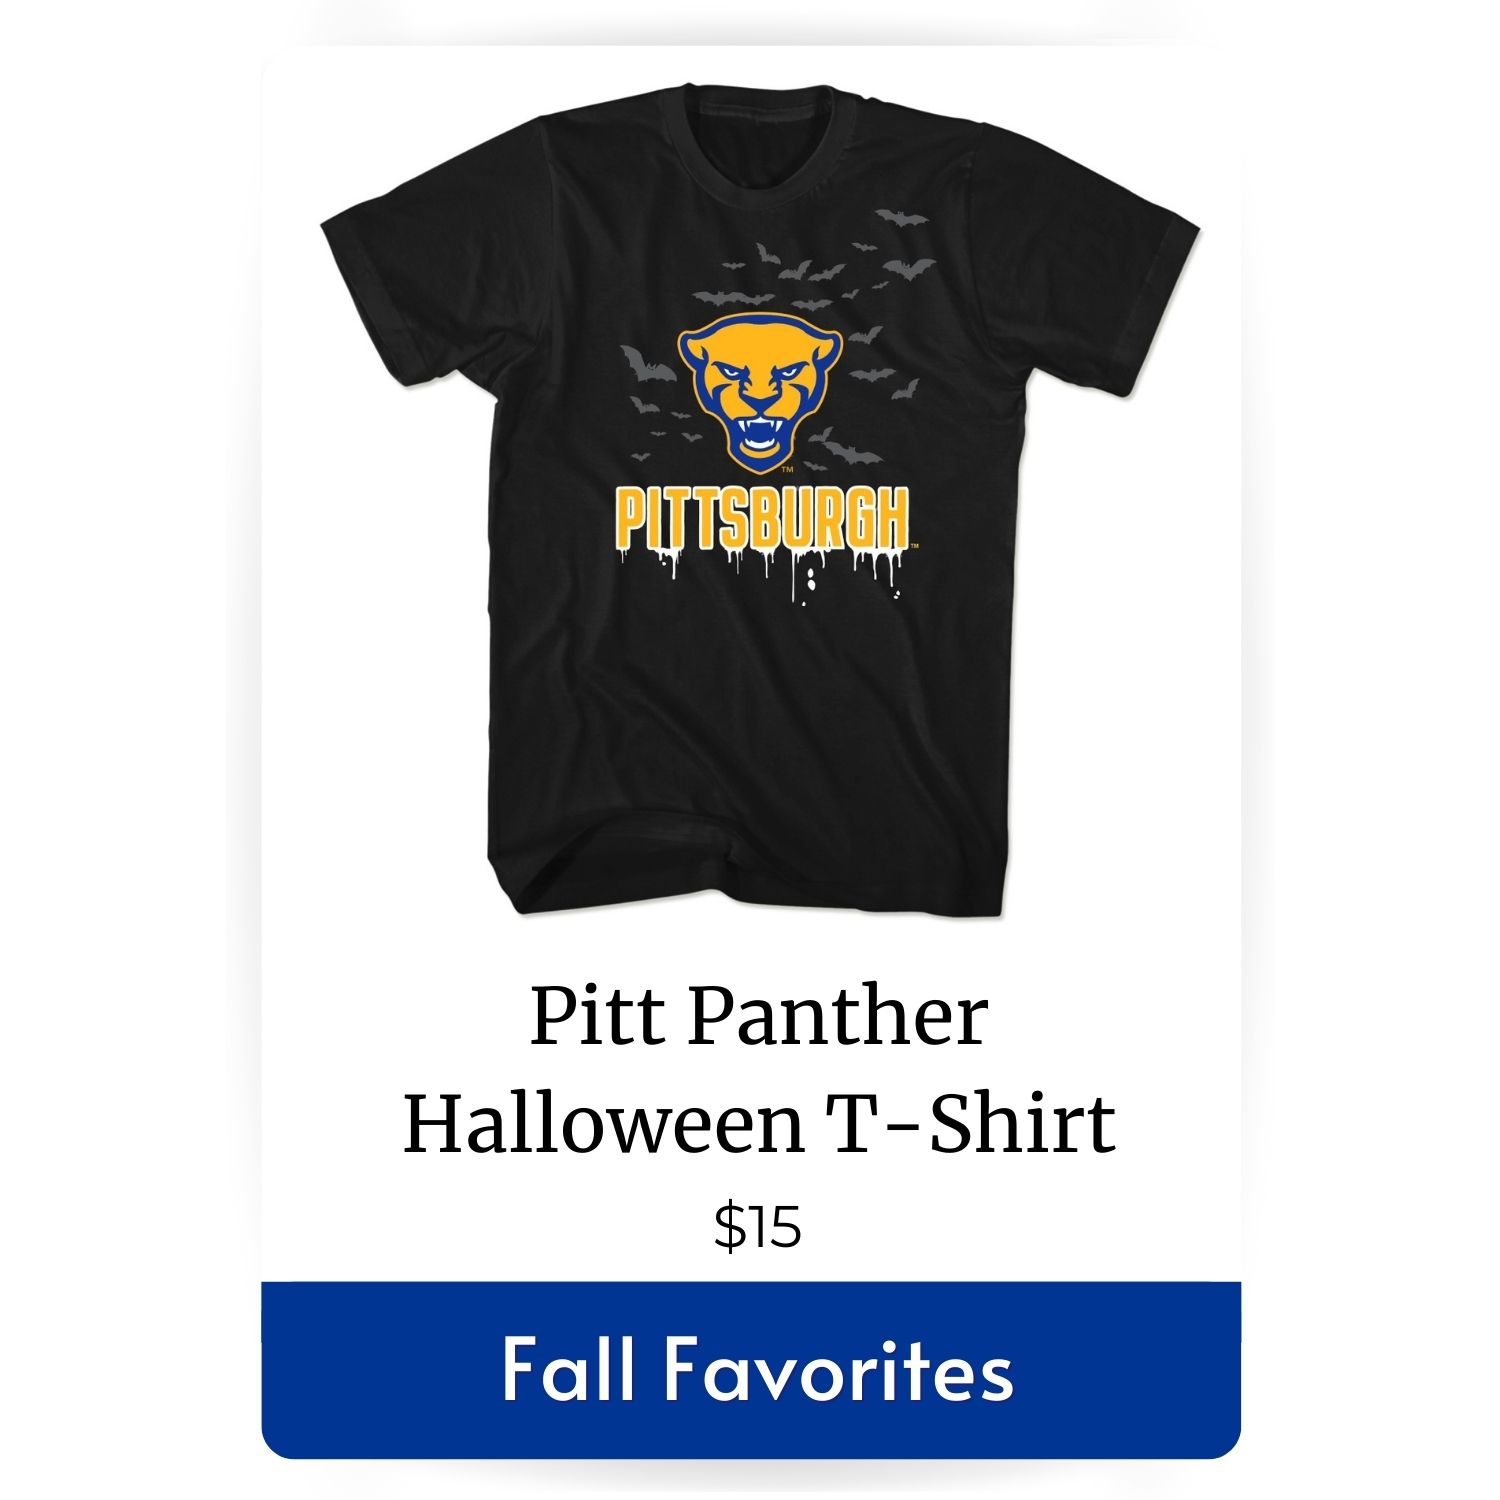 Pitt Panther Halloween T-Shirt image